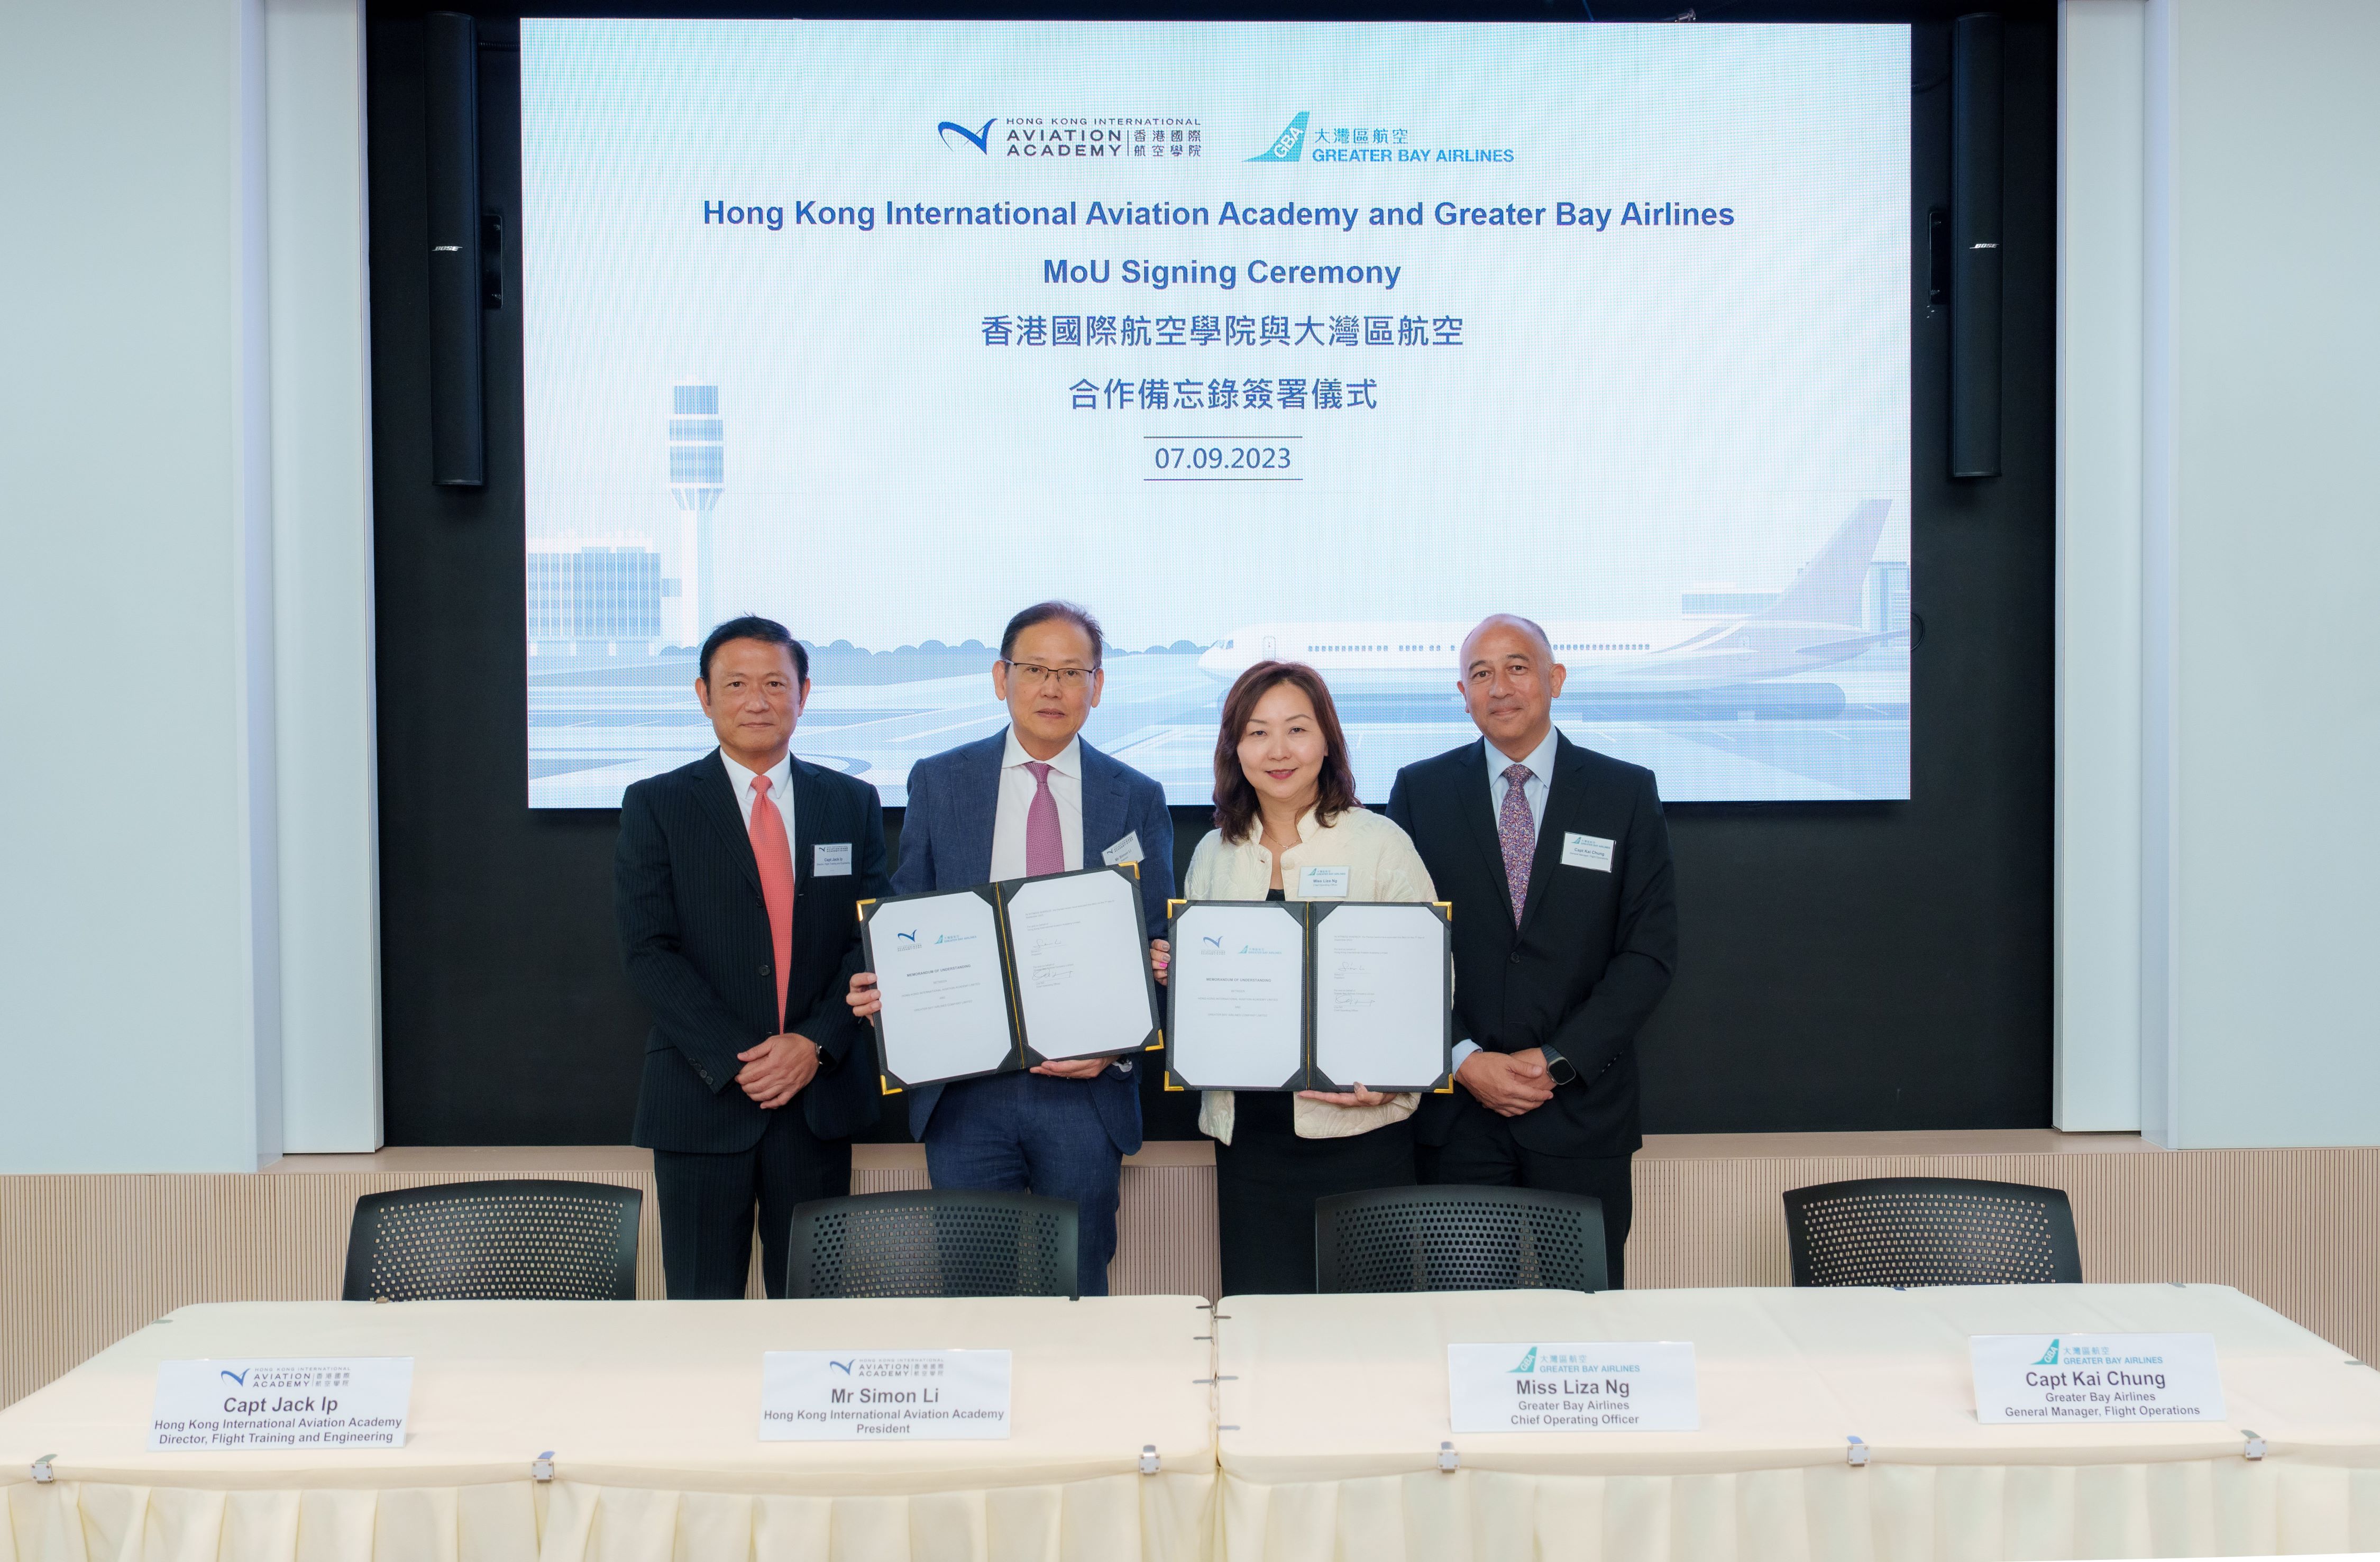 大湾区航空与香港国际航空学院签署合作备忘录 携手培育新一代本地机师以配合市场需求